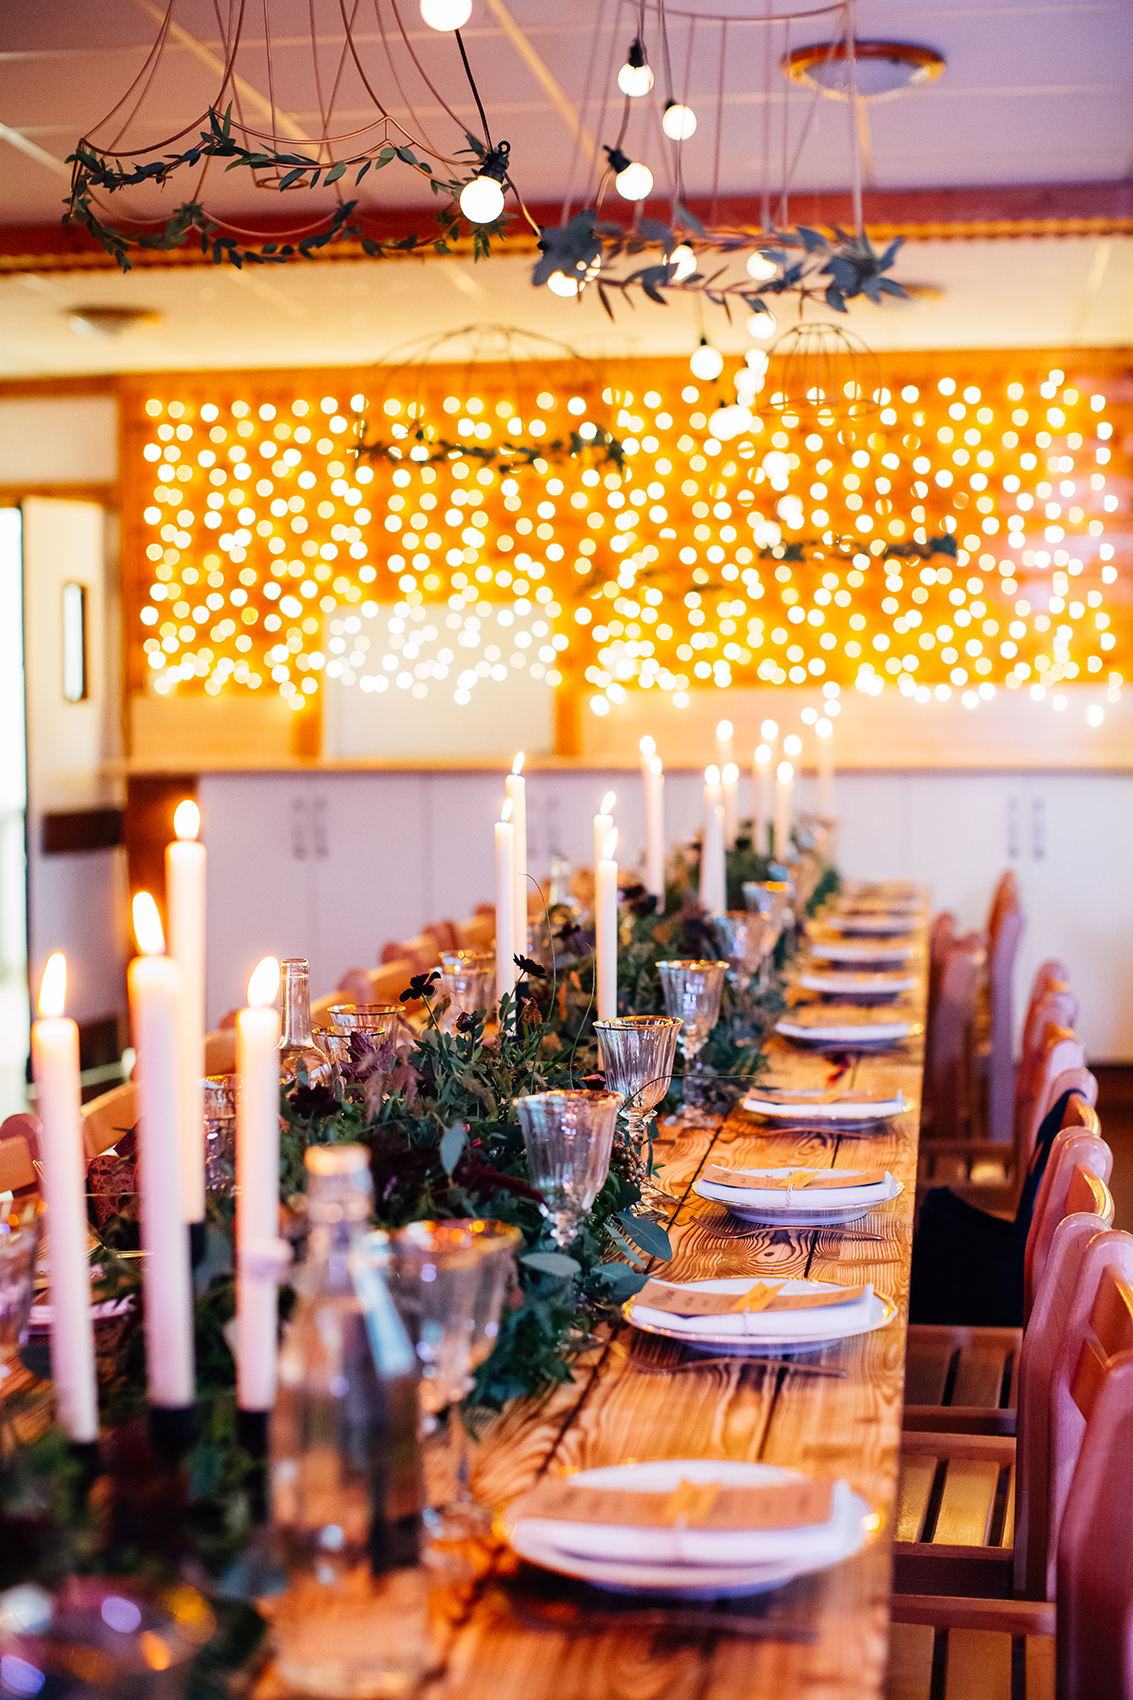 déco centre de table mariage fleurs et gurilandes lumineuses